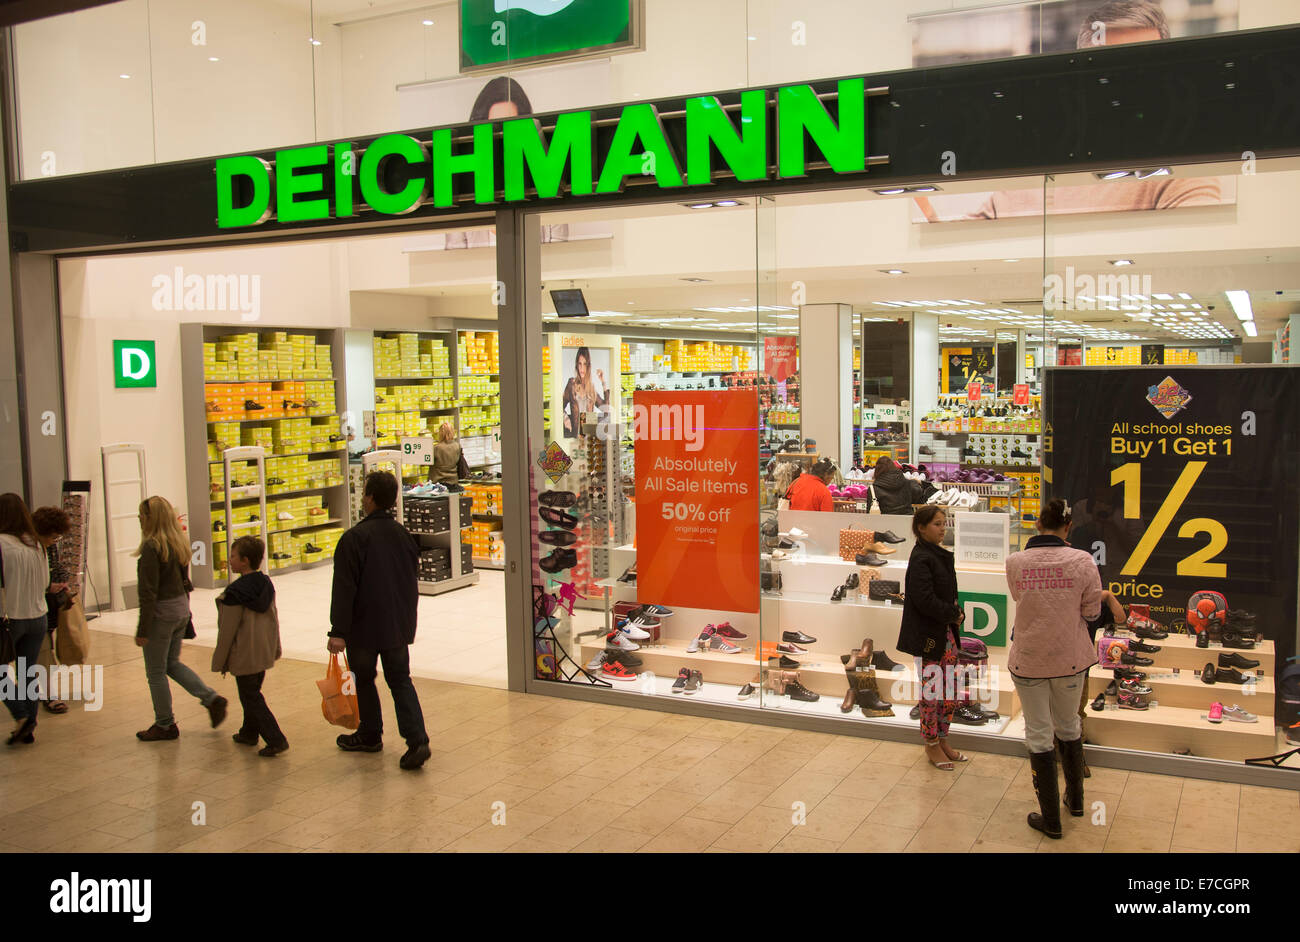 Deichmann-Schuh-Shop im Stadtzentrum von UK Stockfotografie - Alamy